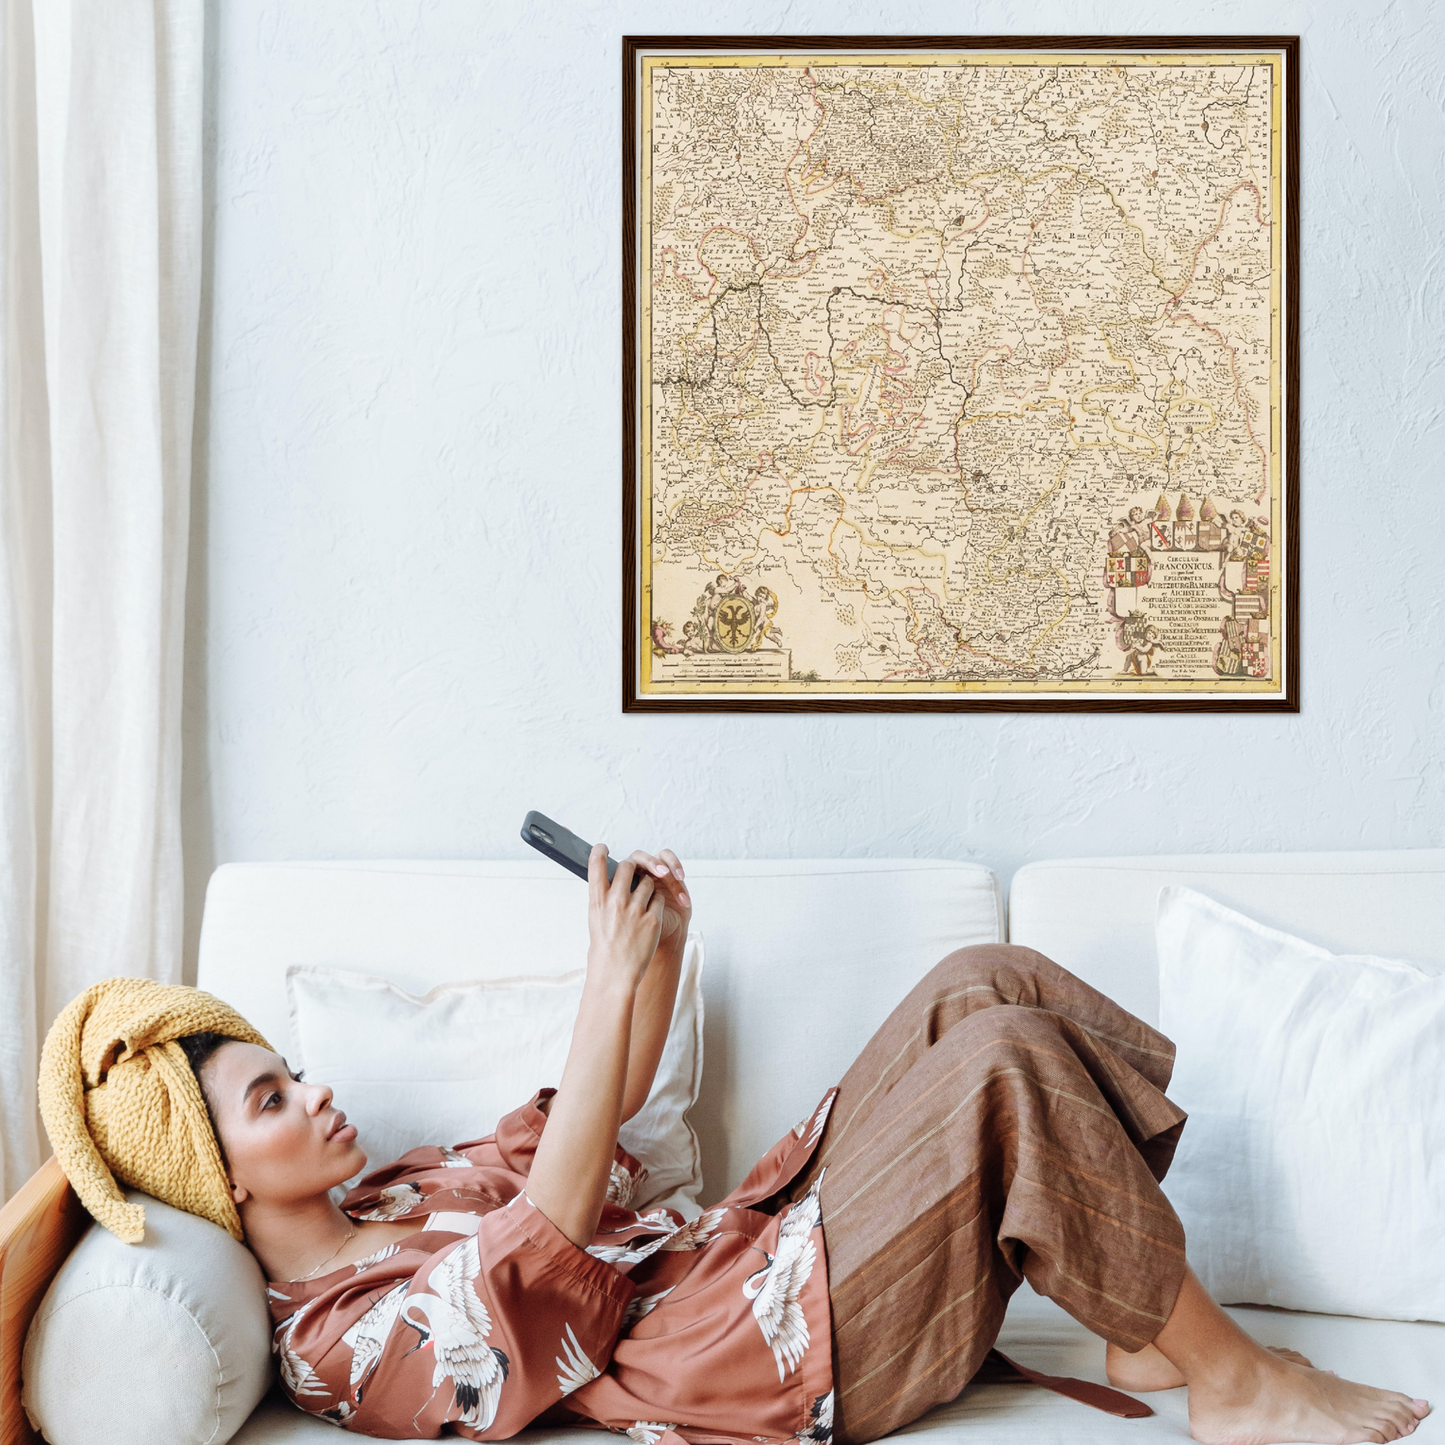 Historische Landkarte Franken um 1698